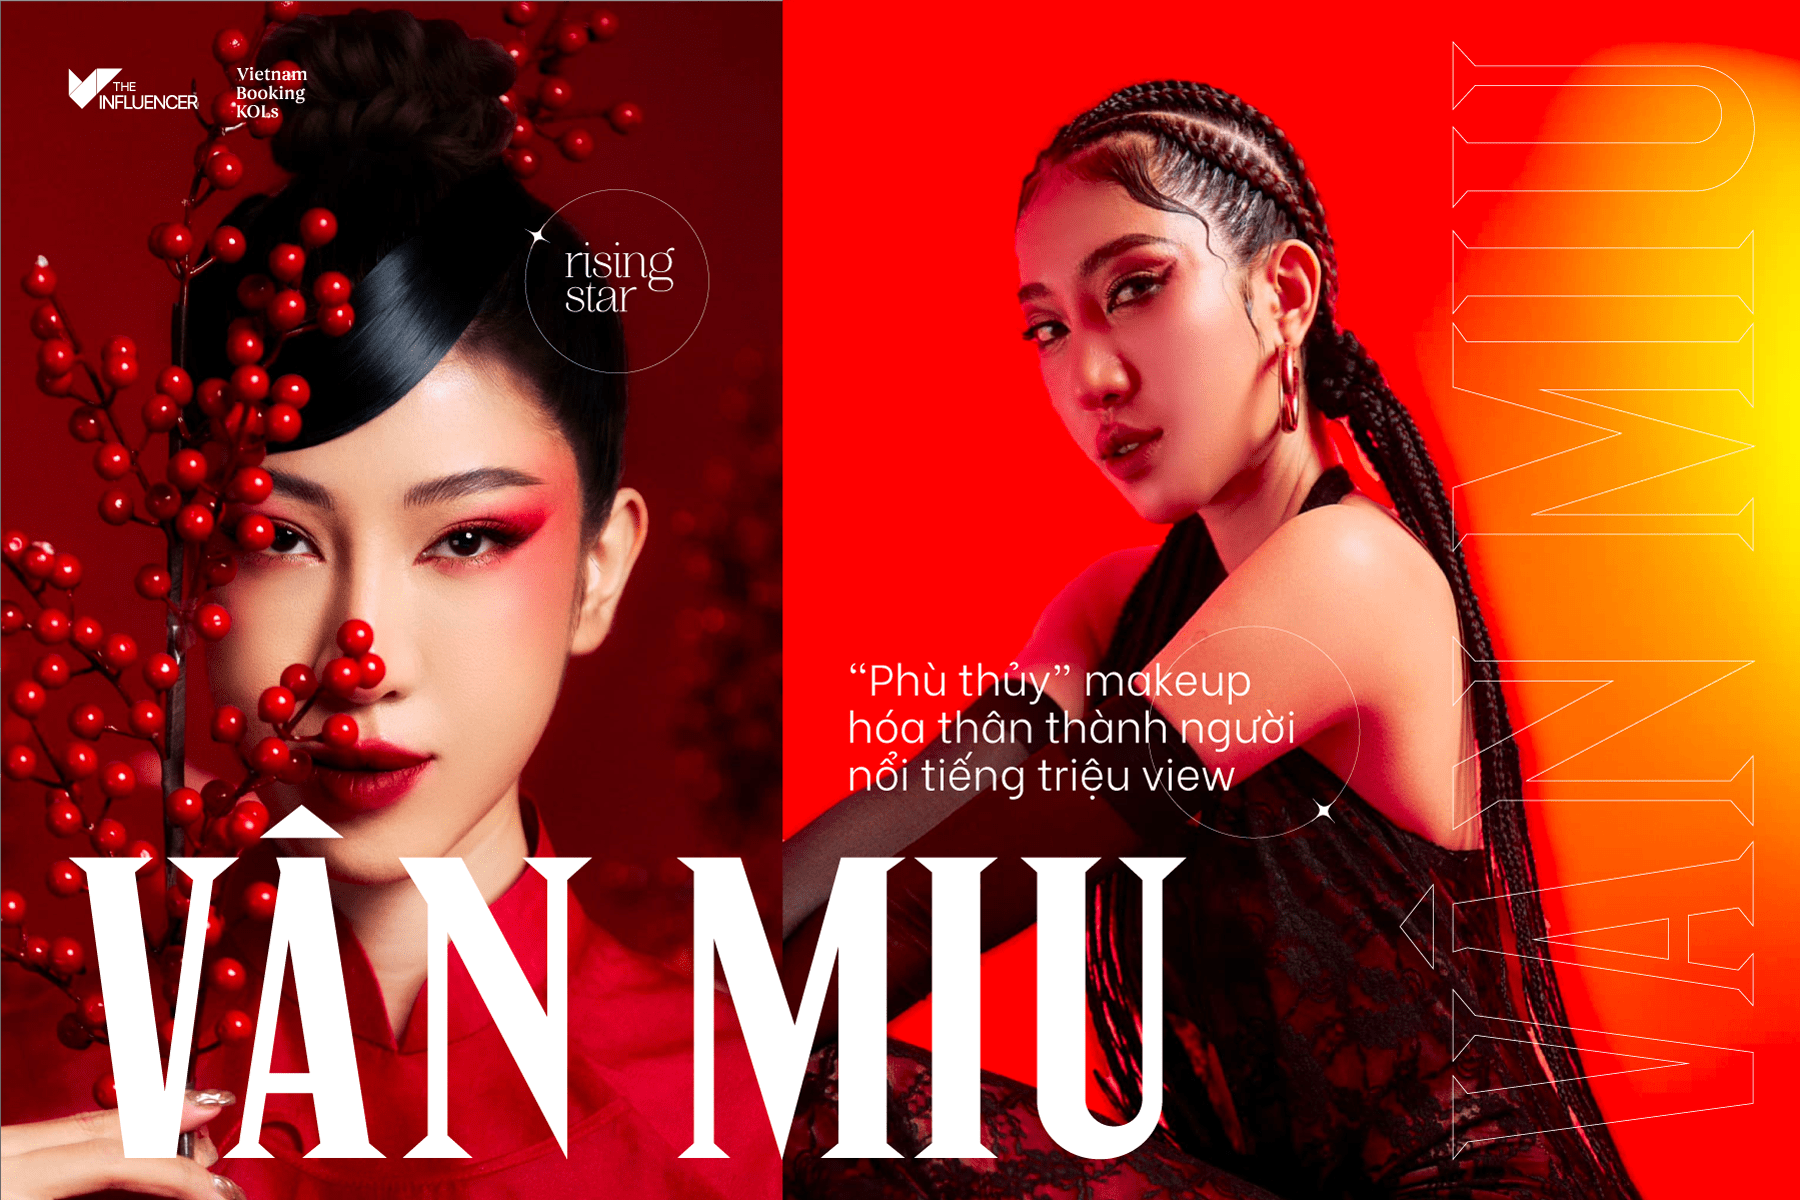 #Risingstar Vân Miu - “phù thủy” makeup hóa thân thành người nổi tiếng triệu view